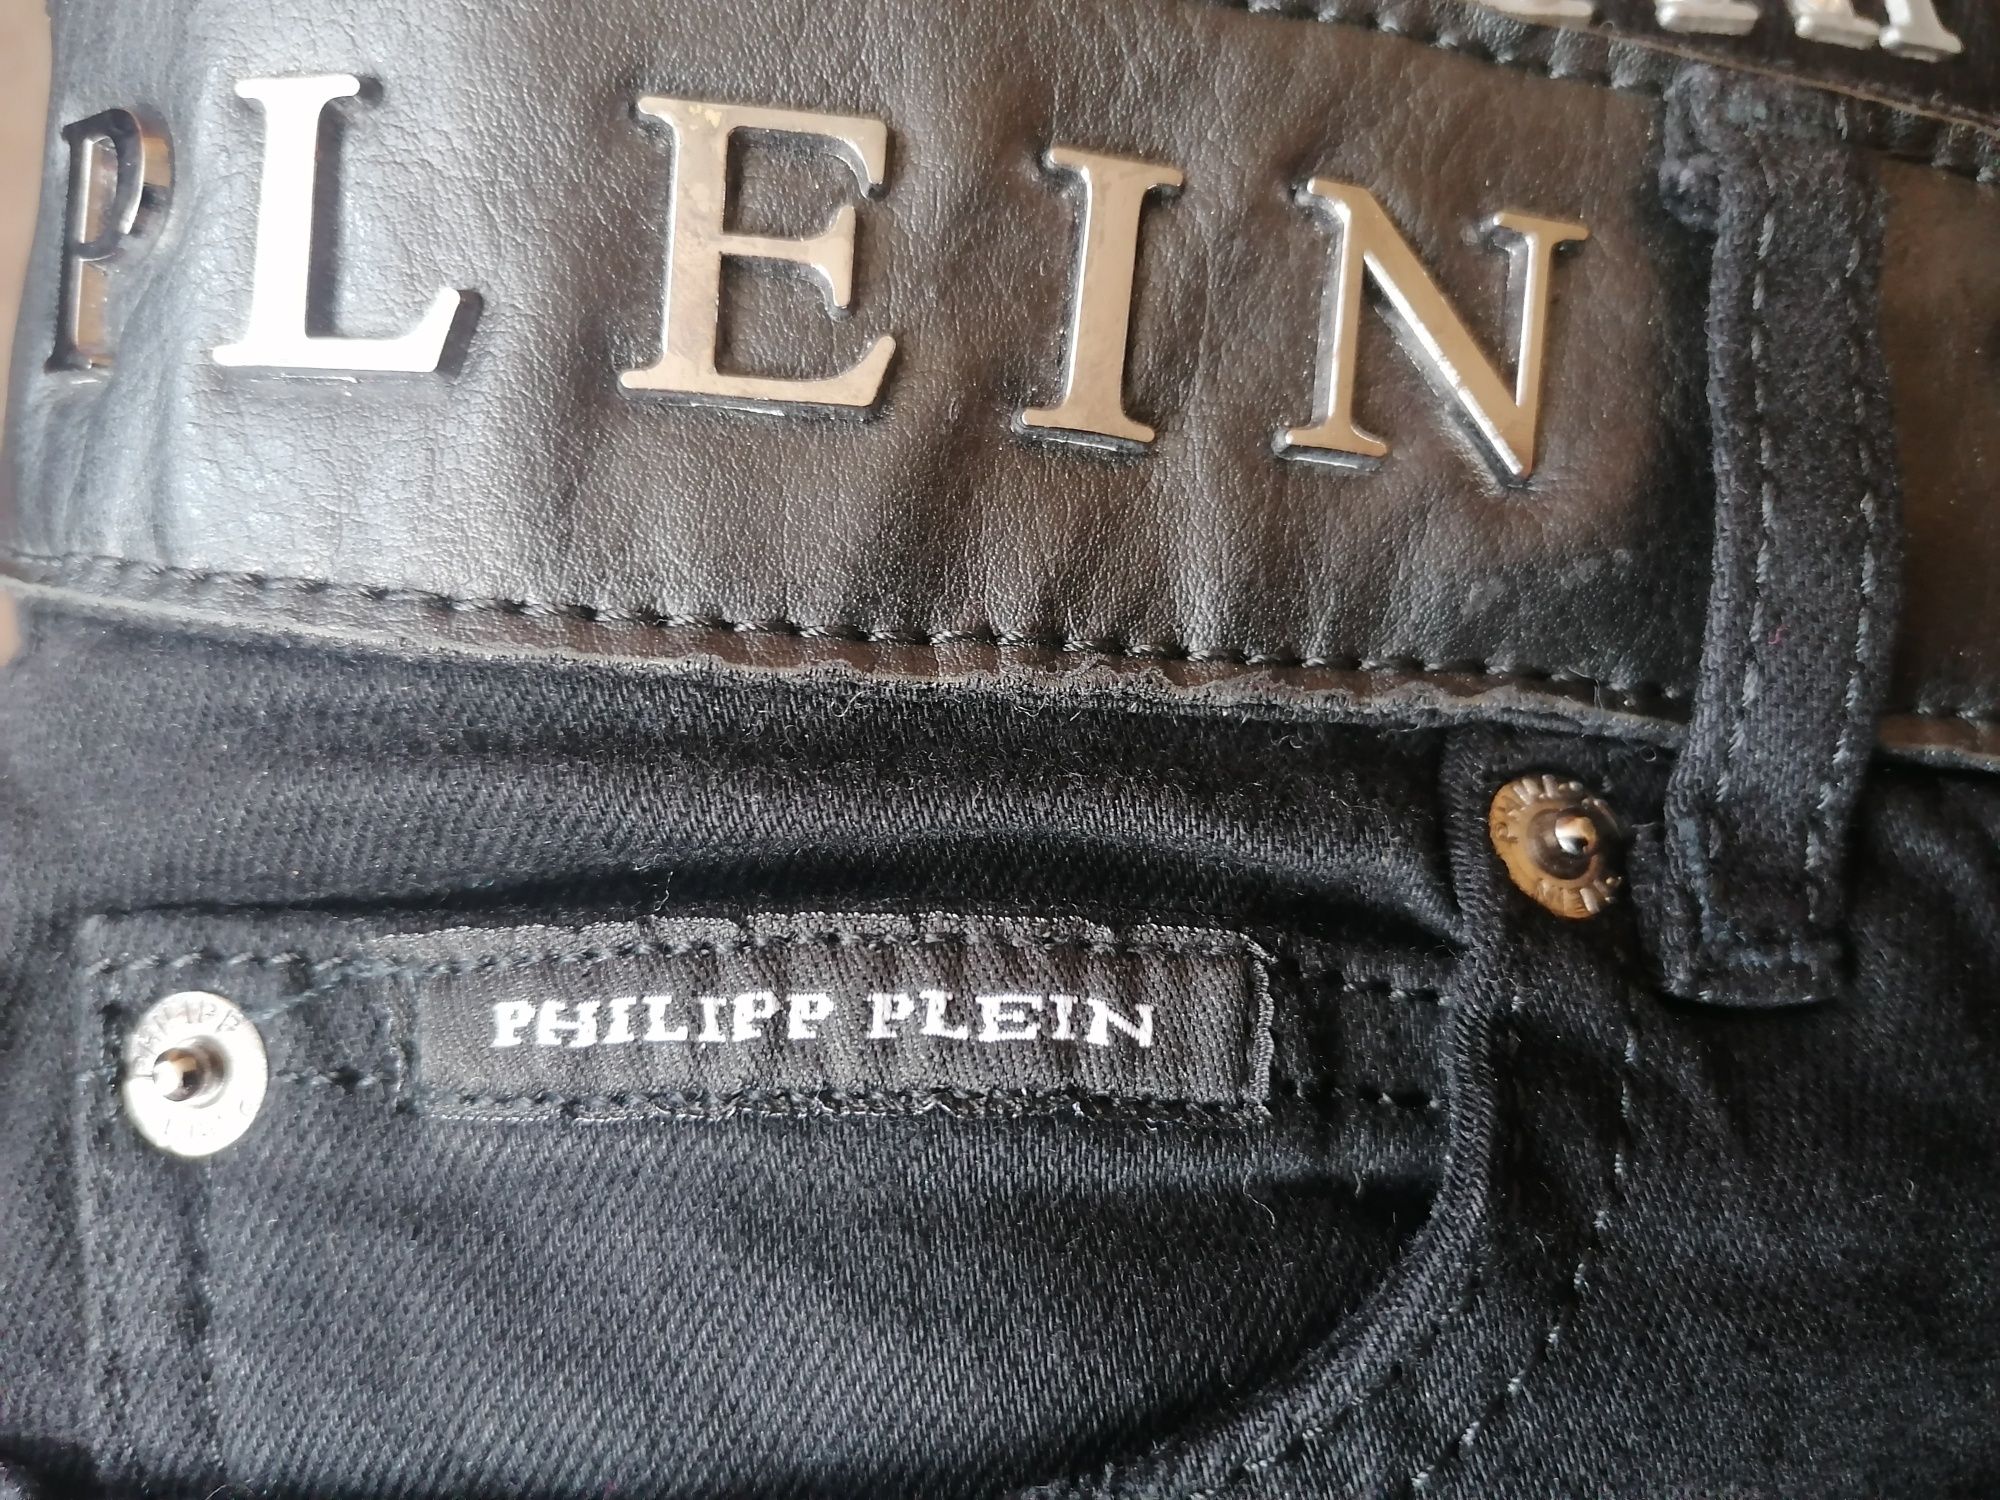 Spodnie  jeans Philip Plein